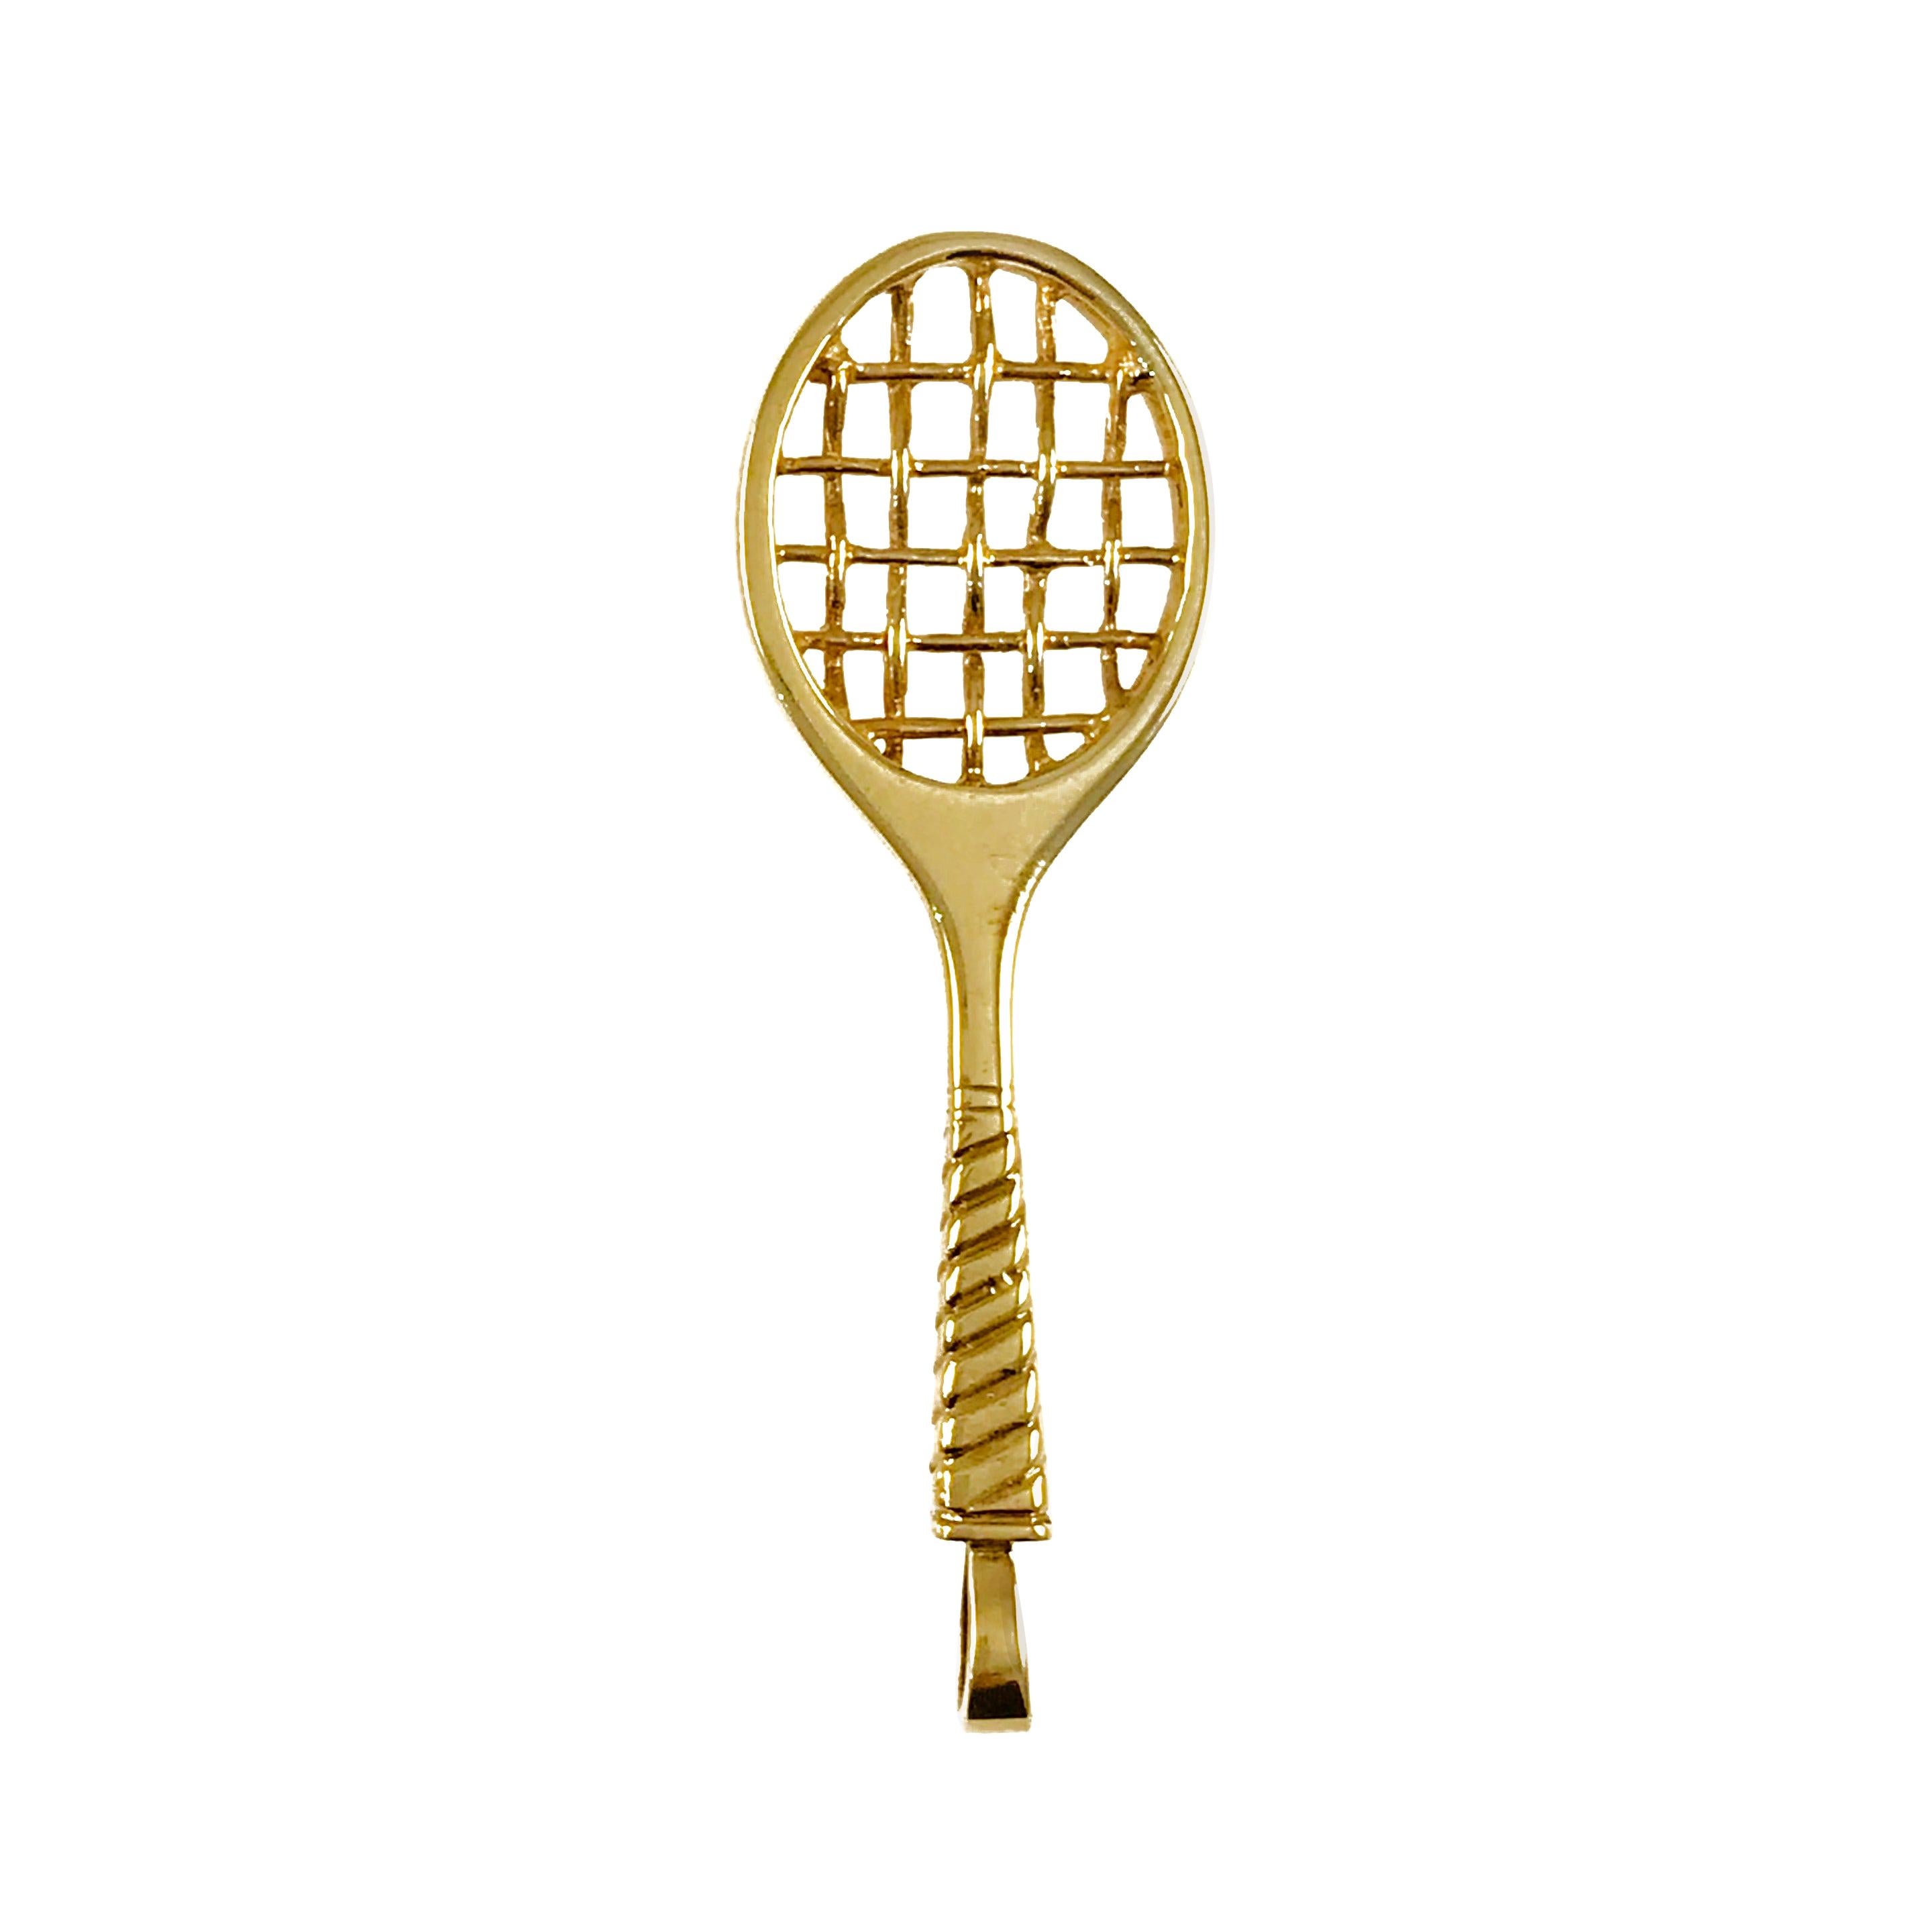 Incogem 14k Gold Racket Pendant For Sale